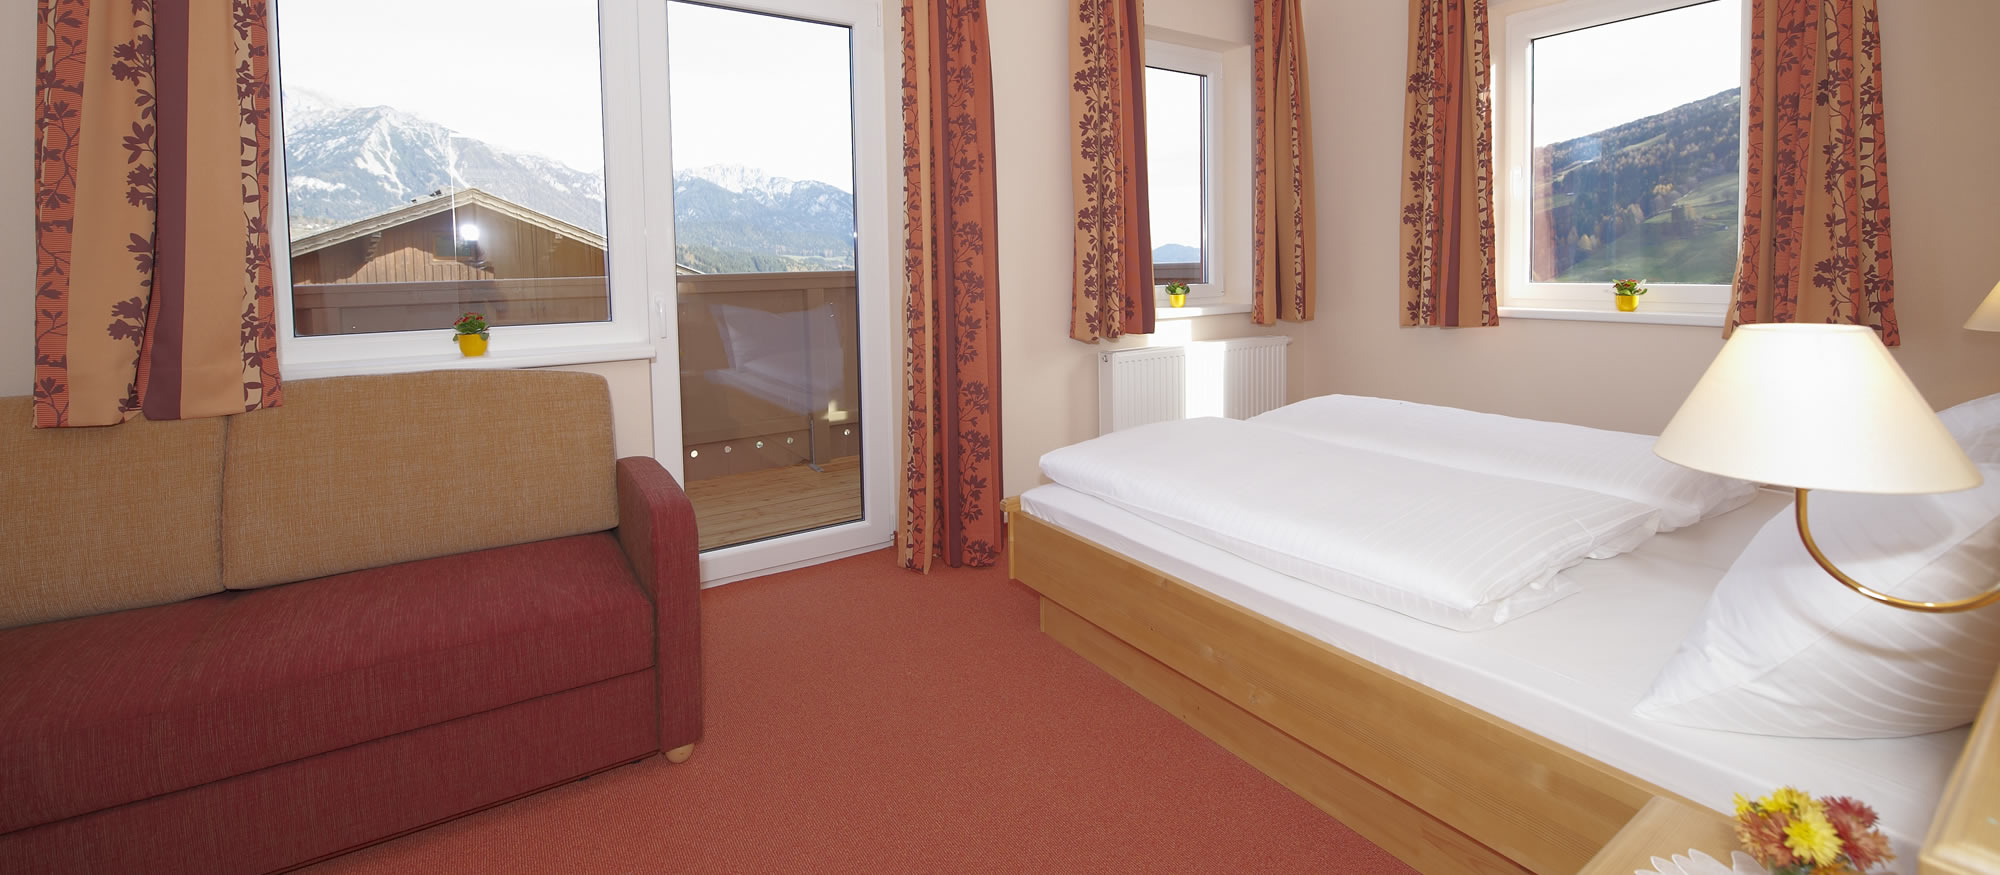 Doppelzimmer im Hotel Pariente in Rohrmoos bei Schladming